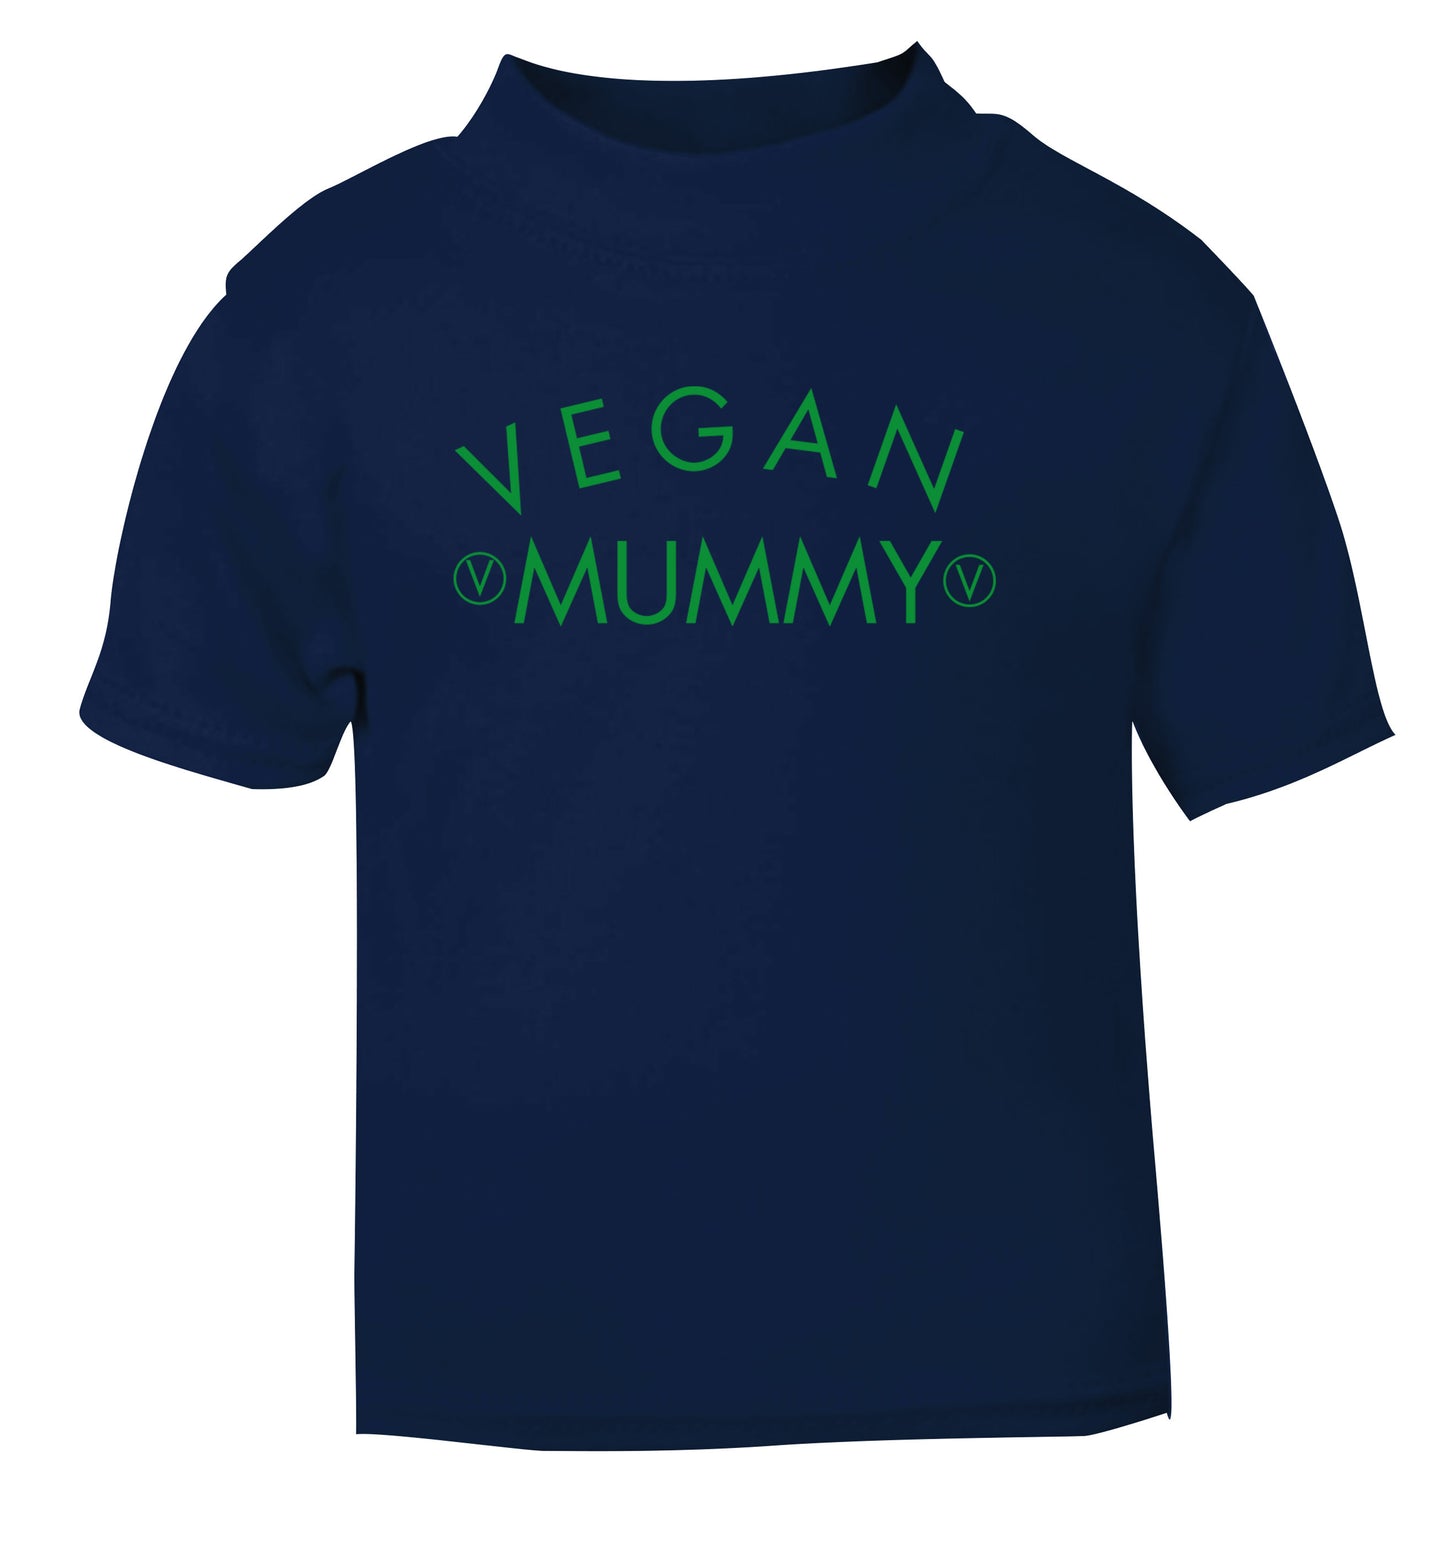 Vegan mummy navy Baby Toddler Tshirt 2 Years